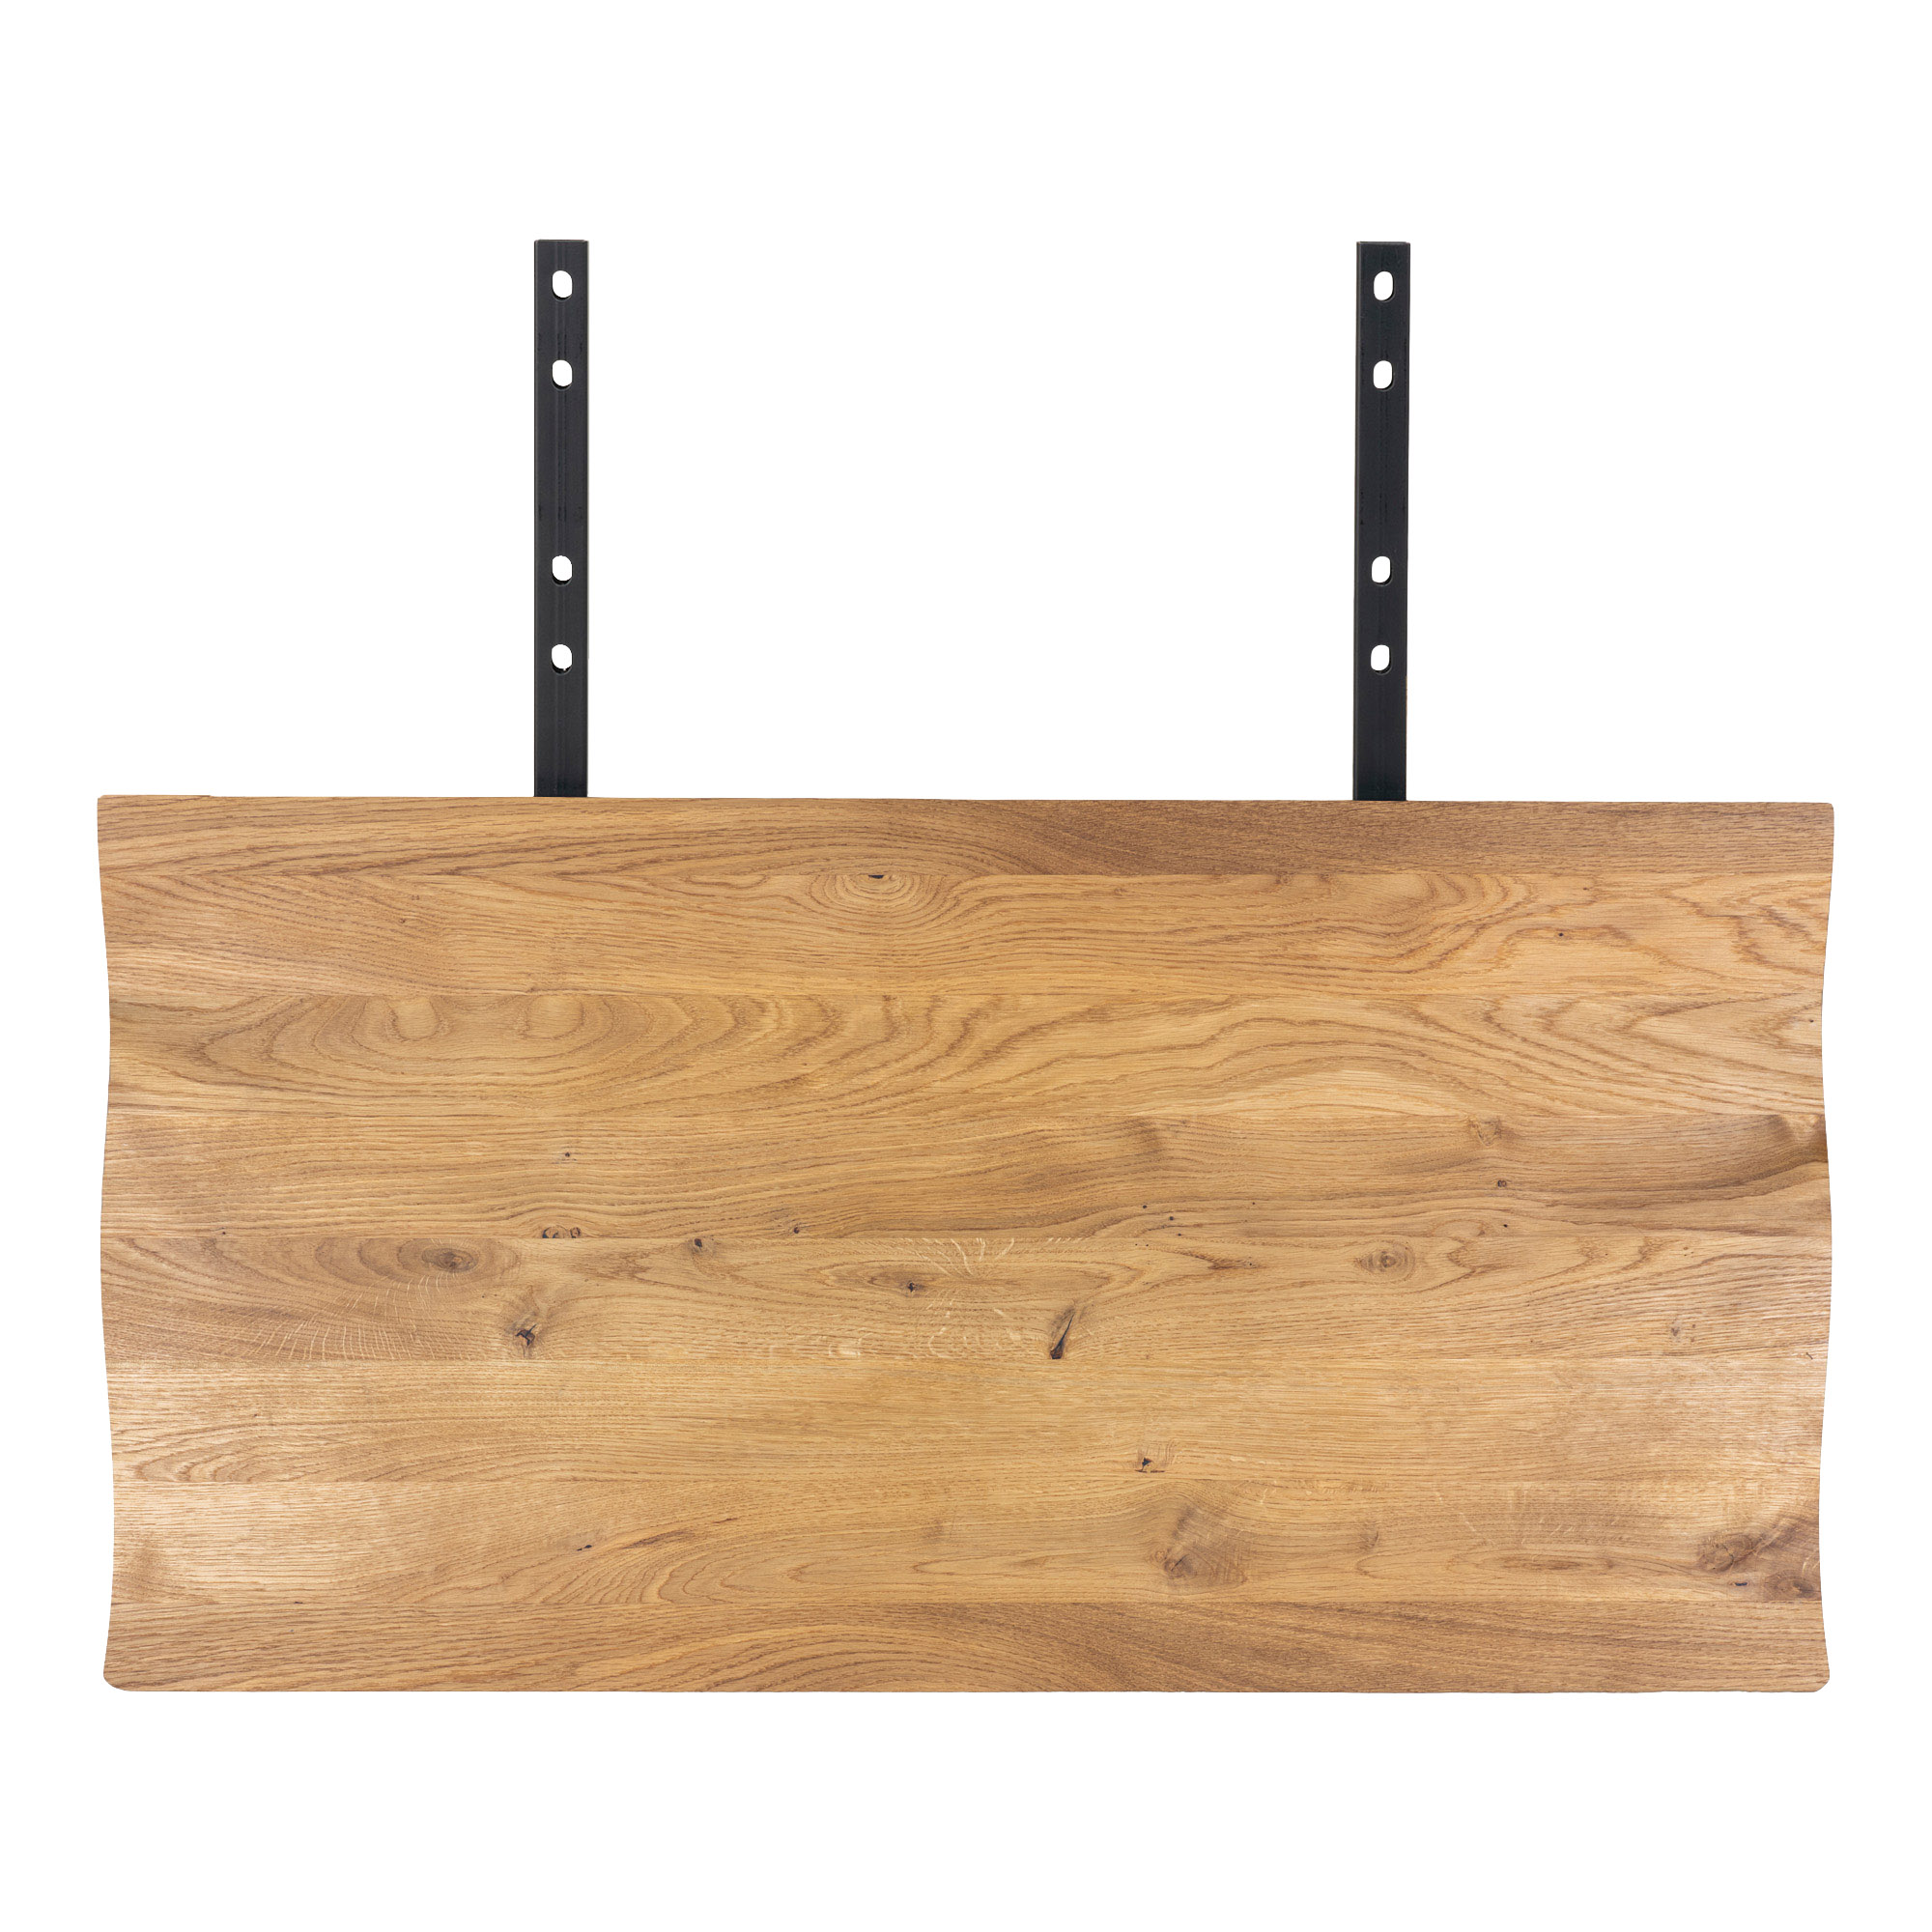 8: Juva - Spisebord i olieret  eg, 95 x 240 cm, med eller uden tillægsplader Med 2 tillægsplader